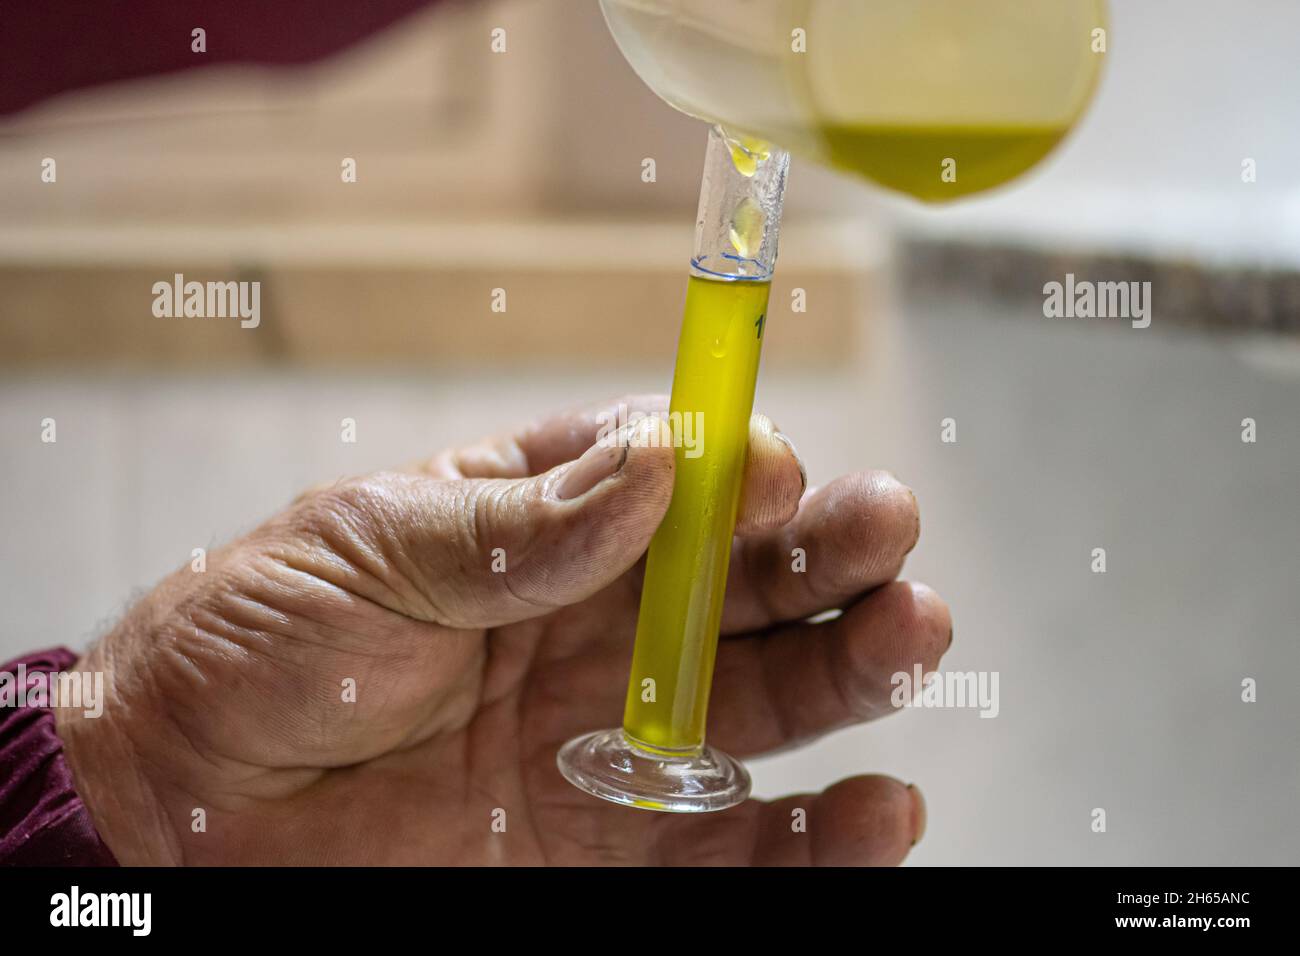 Ökologische Produktion von nativem Olivenöl extra mit moderner Technologie, Extraktion und Filterung, reines Olivenöl in einer Glasflasche Stockfoto